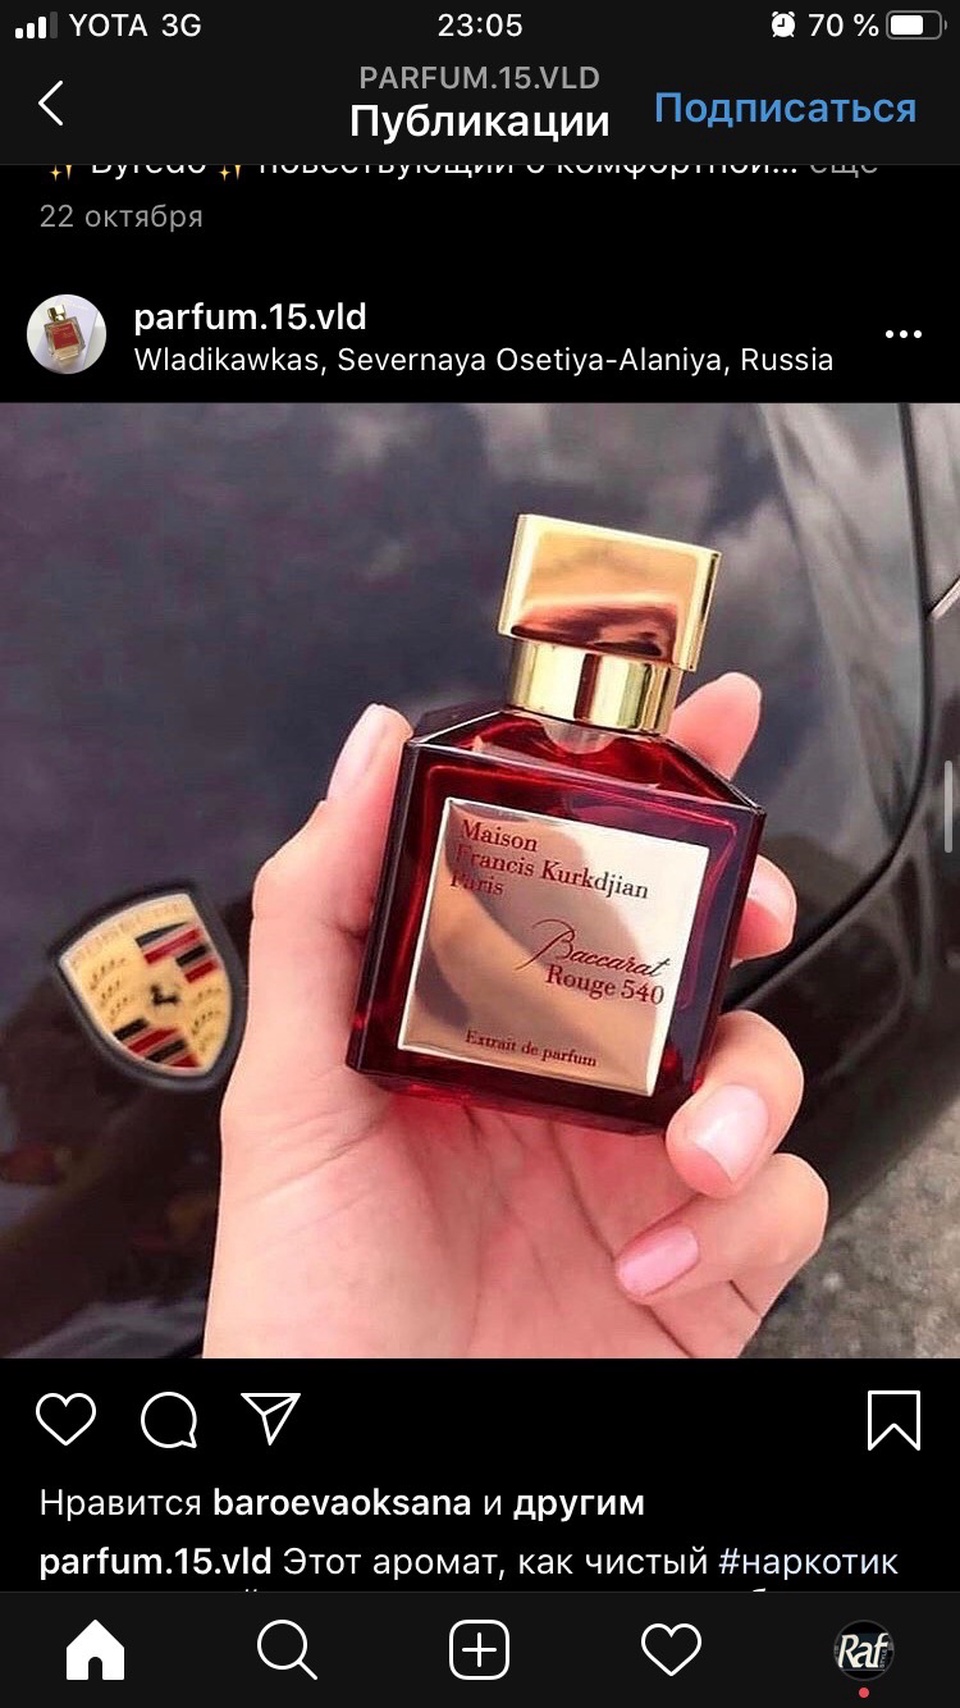 MAISON FRANCIS KURKDJIAN baccarat rouge 540 парфюм на разлив - 150 ₽, заказать онлайн.